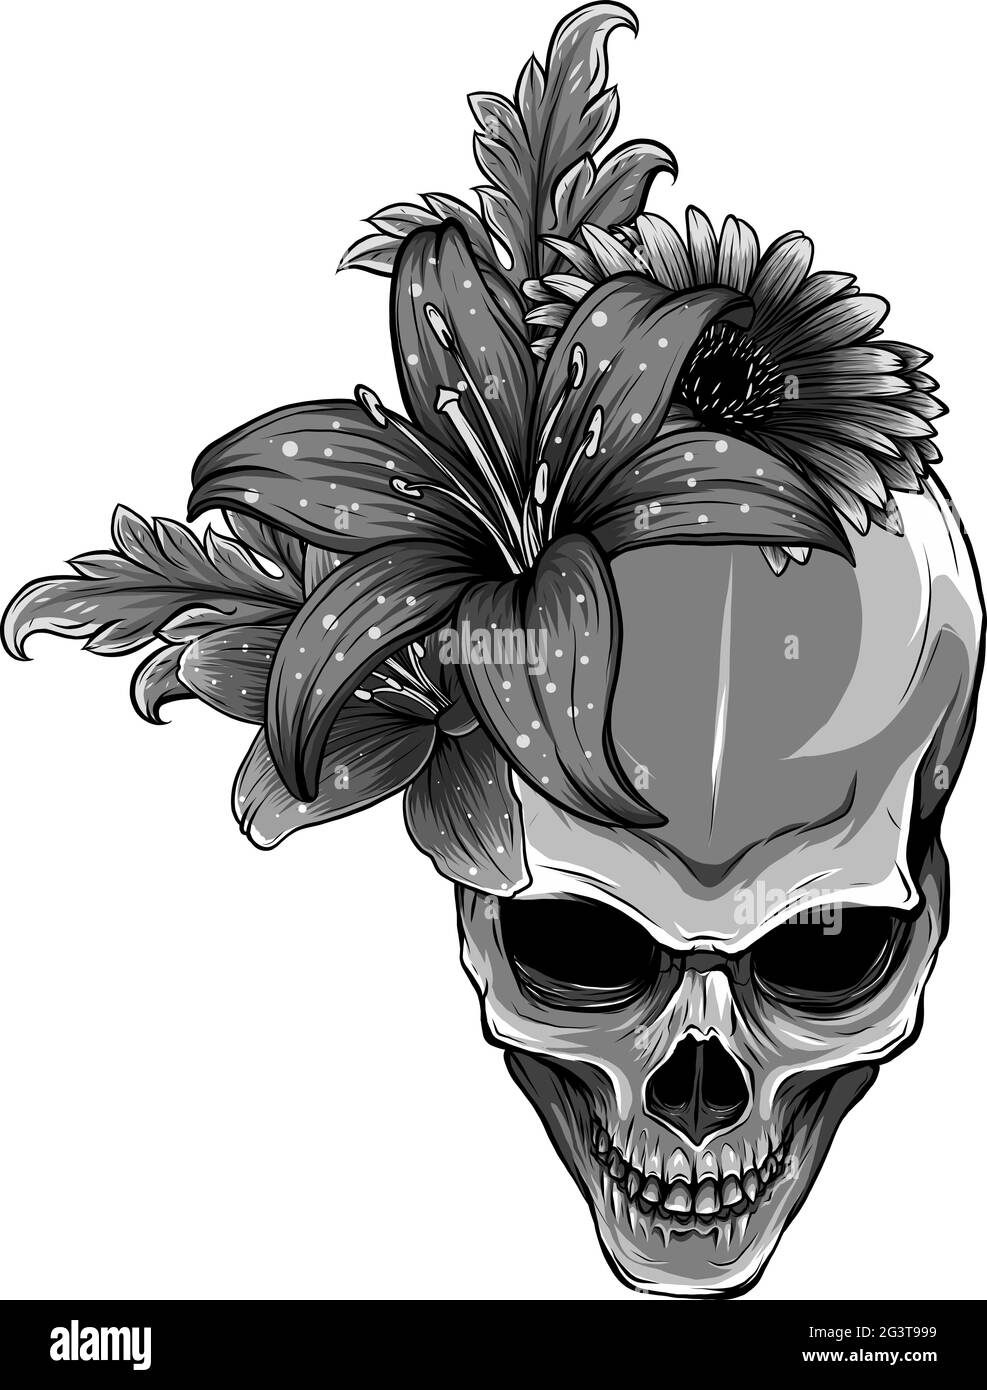 Calavera con flores Imágenes de stock en blanco y negro - Alamy